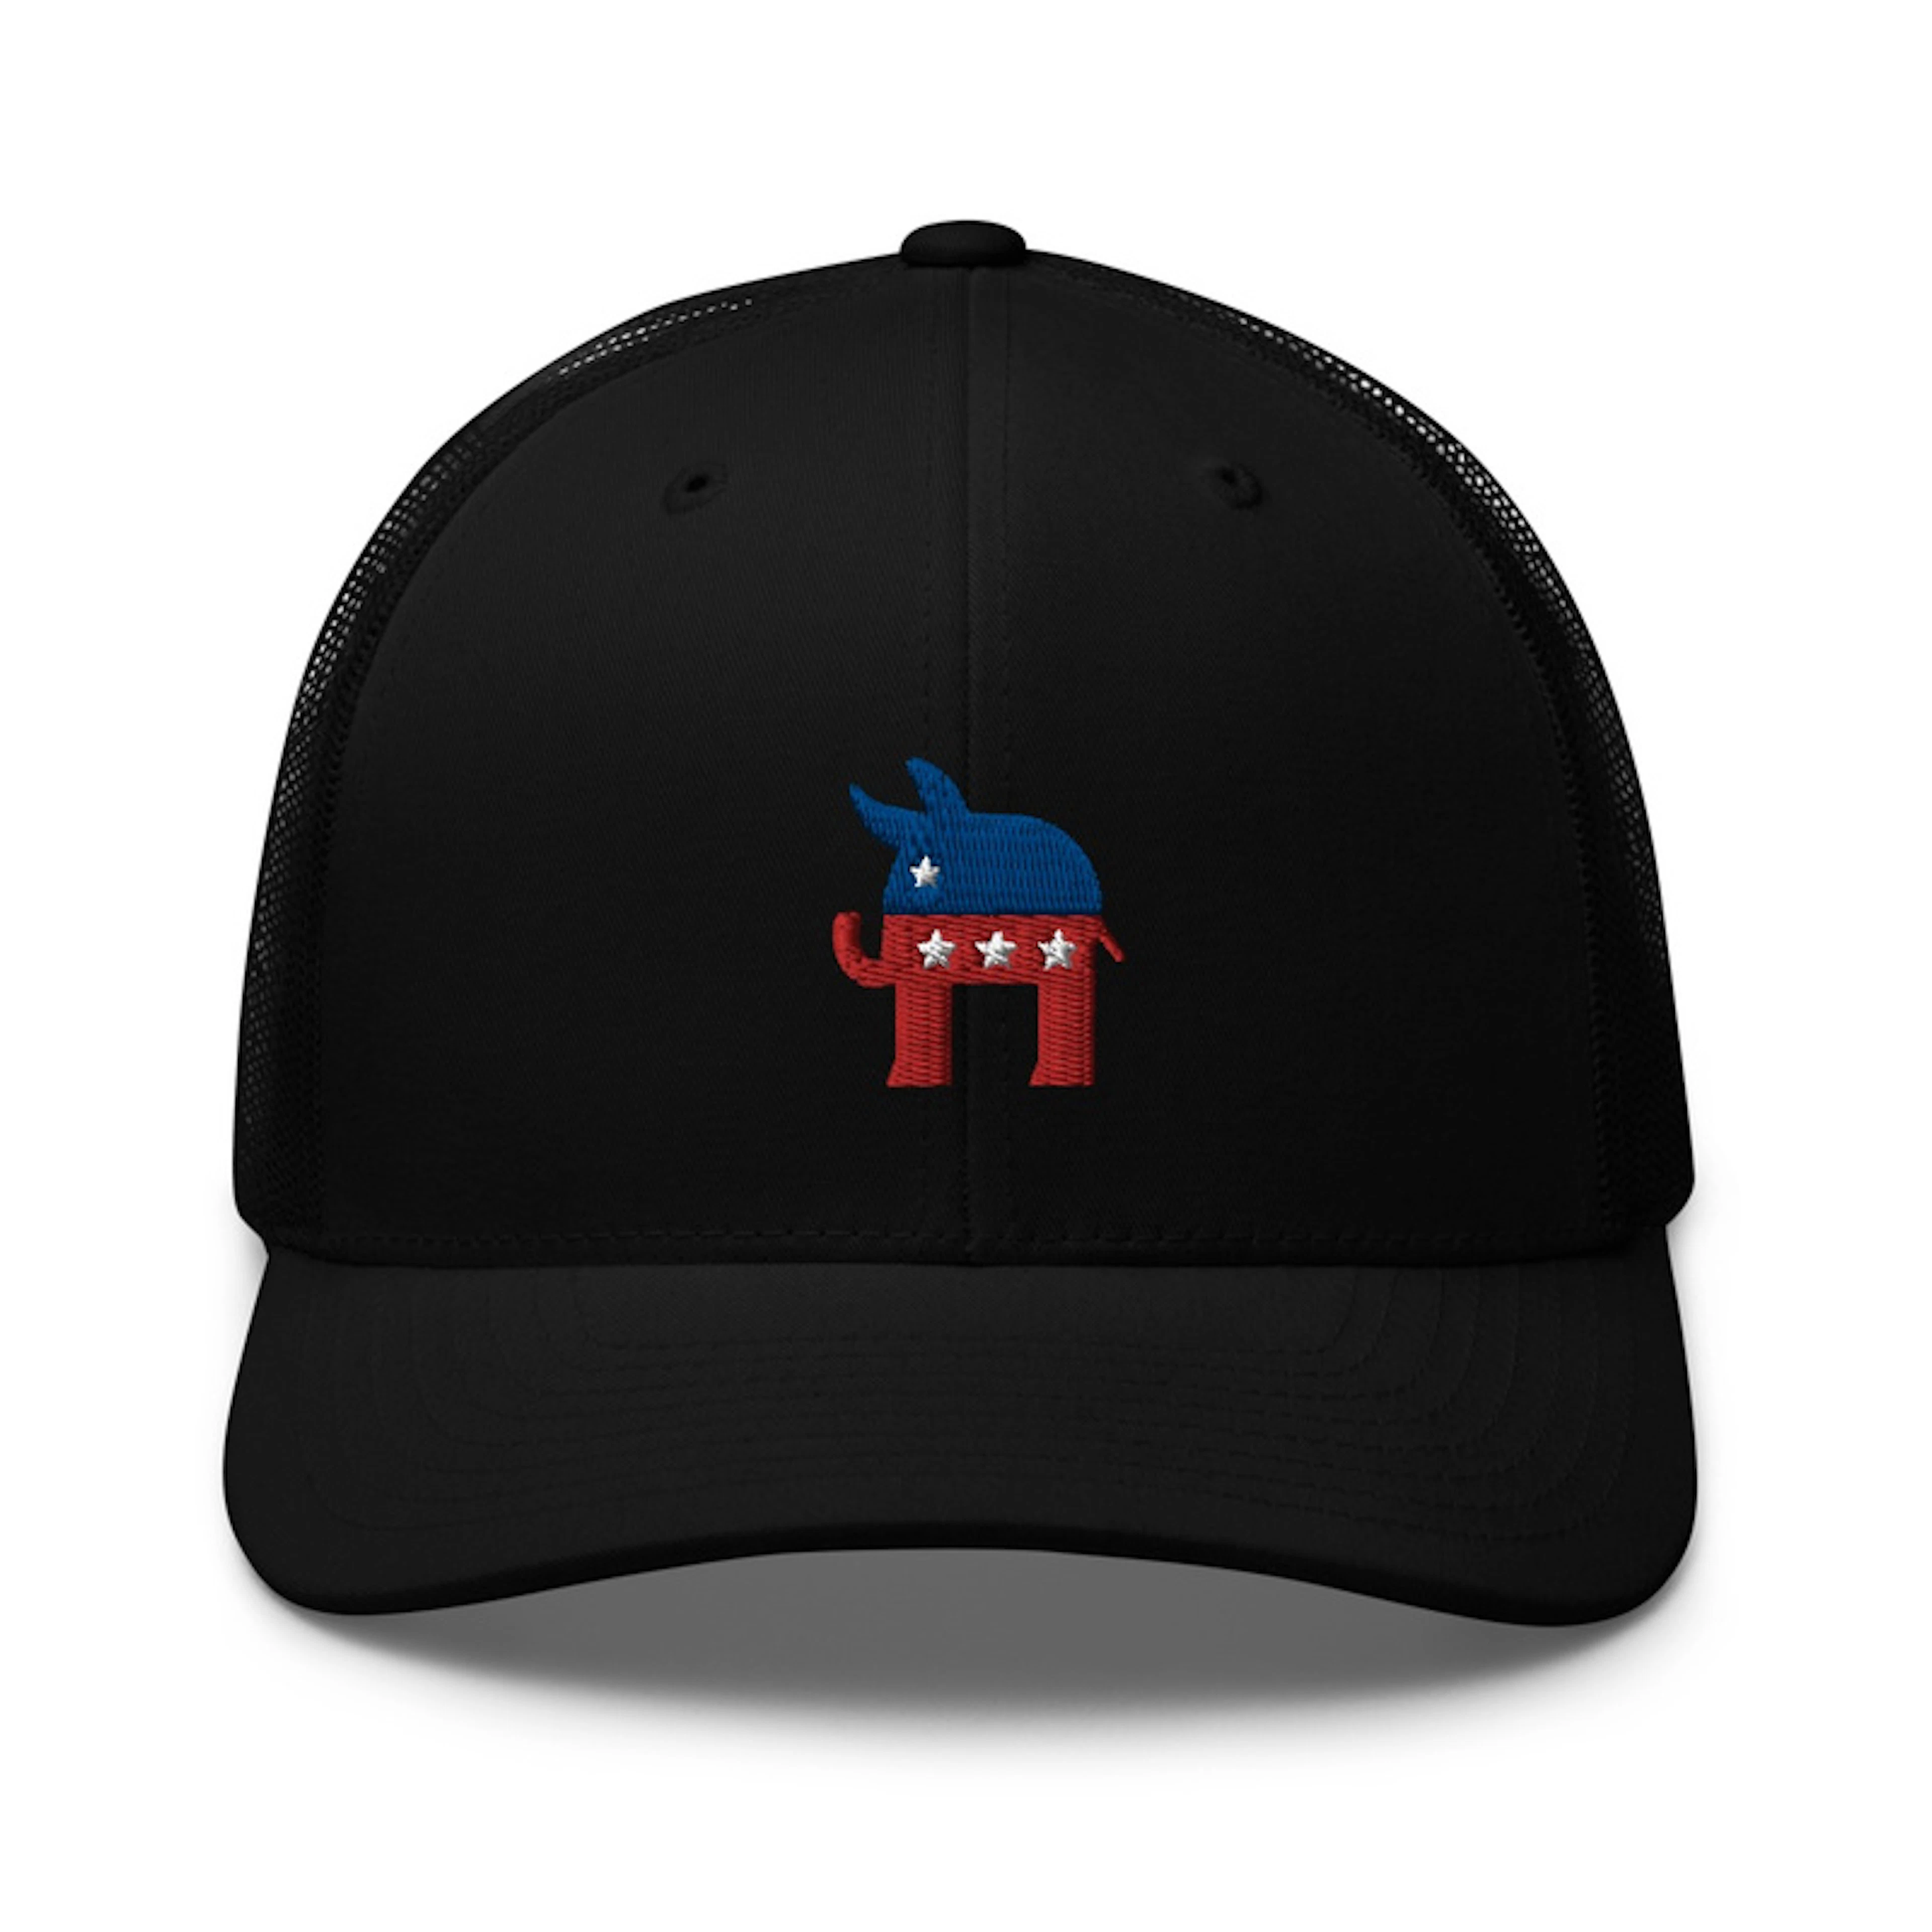 Radical Left Republican Hat